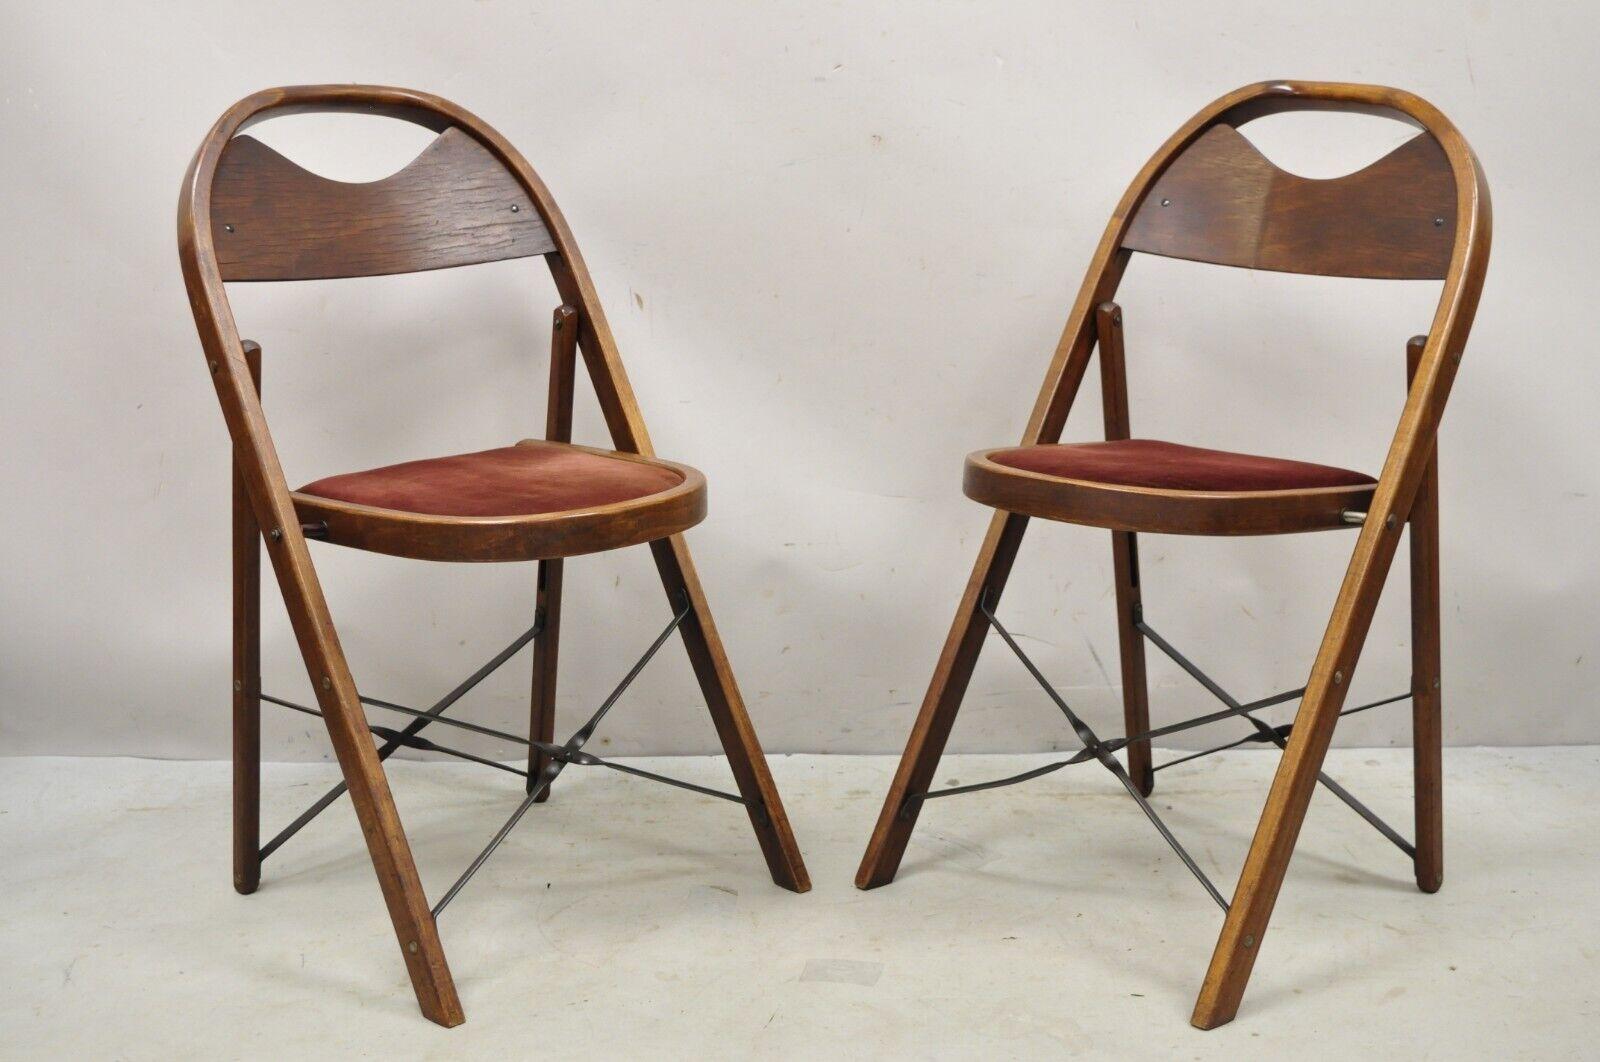 Vintage Art Deco Wooden Theatre Folding Chairs von General Sales Co Satz von 6 (B). Gepolsterte Sitze, Querstrecker aus Metall, Rahmen aus Bugholz, originales Label, sehr schönes Vintage-Set, (2) 6er-Sets derzeit verfügbar, Preis pro Set. CIRCA